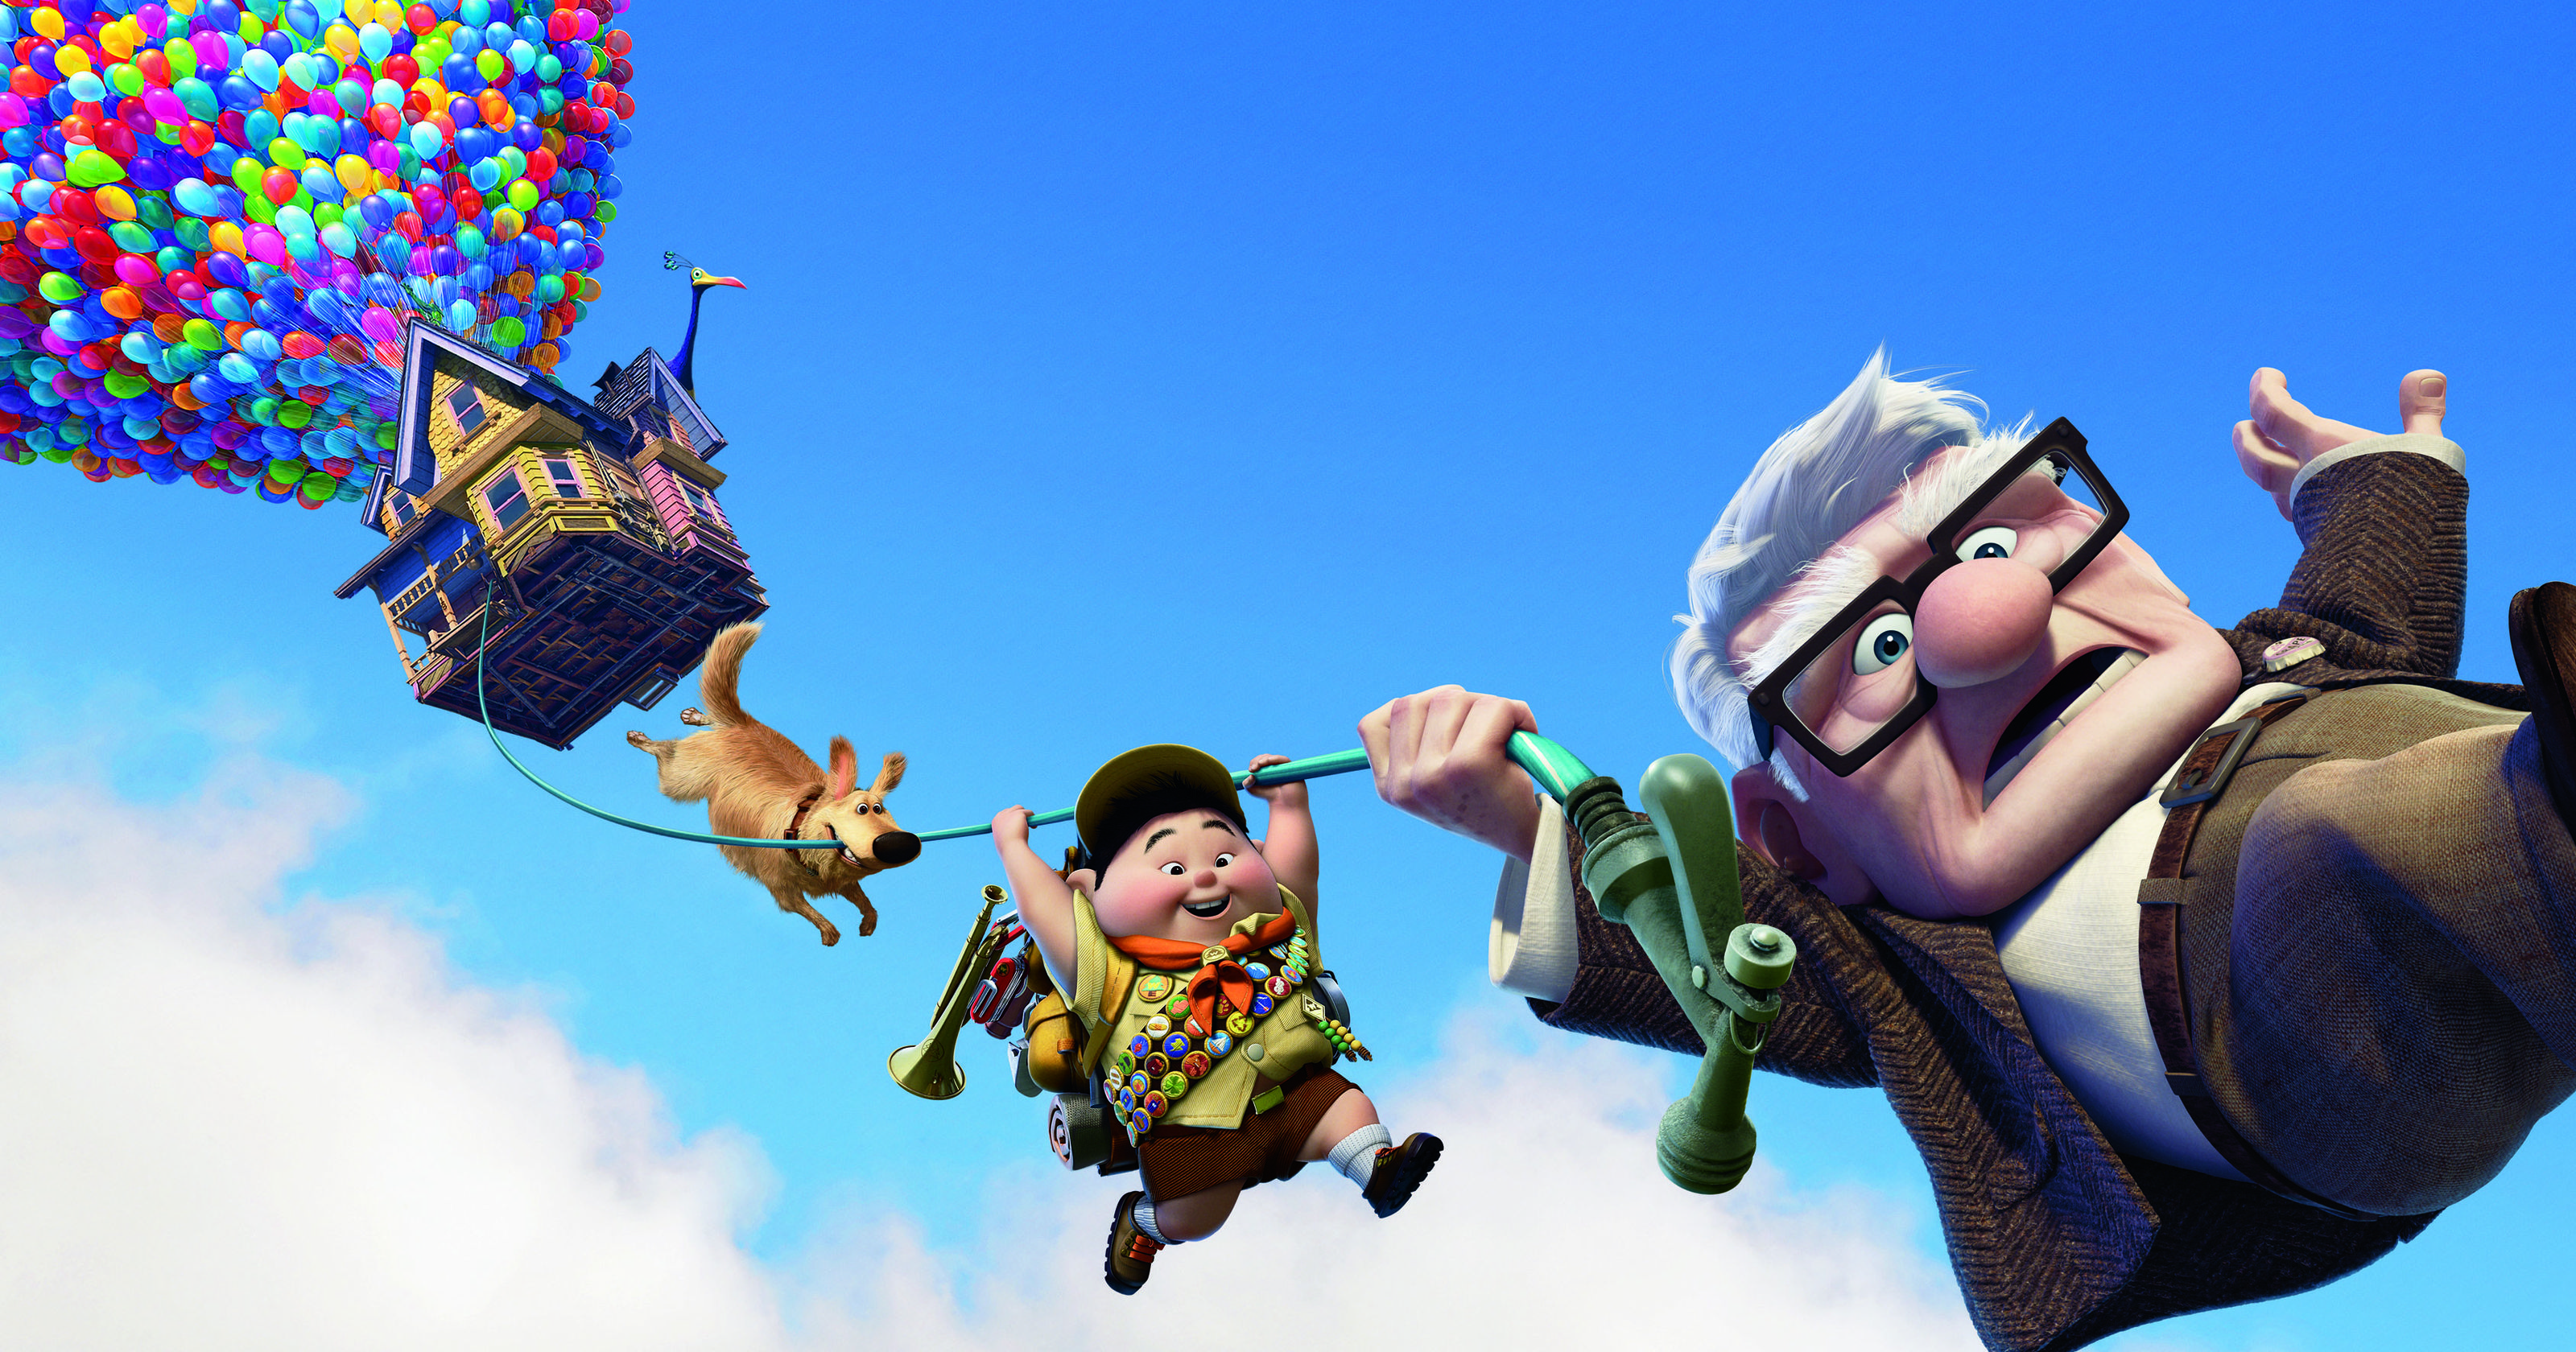 Ein fliegendes Haus mit unzÃ¤hligen Luftballons, von dem ein Seil herunterhÃ¤ngt, an dem ein Hund, ein Junge und ein alter Mann hÃ¤ngen.